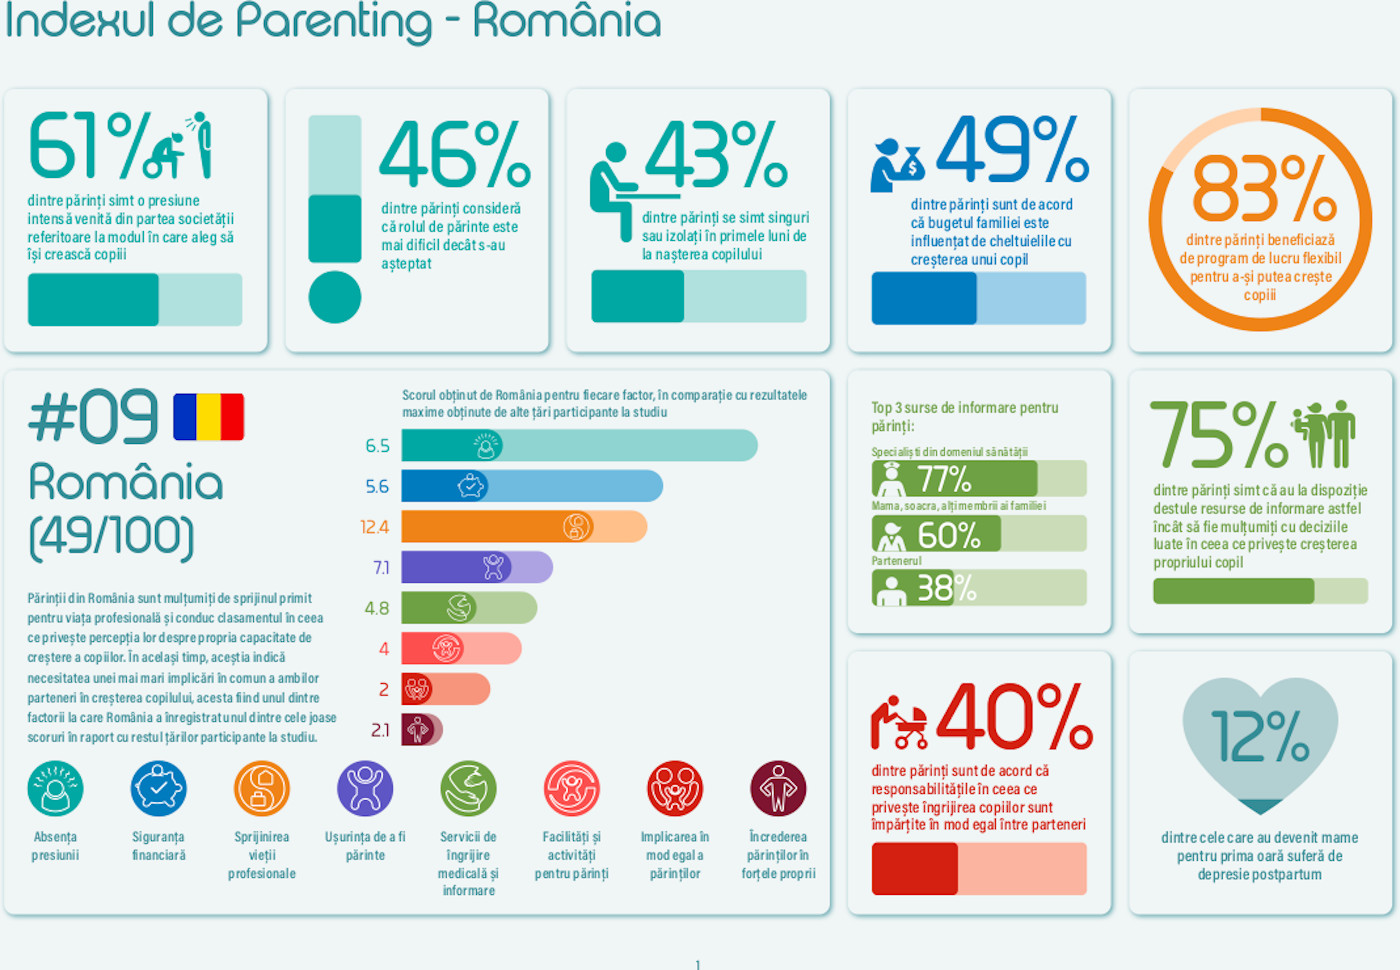 80% dintre părinții români se simt complet împliniți în calitate de părinți, arată noul Index de Parenting realizat la inițiativa Nestlé (The Parenting Index)